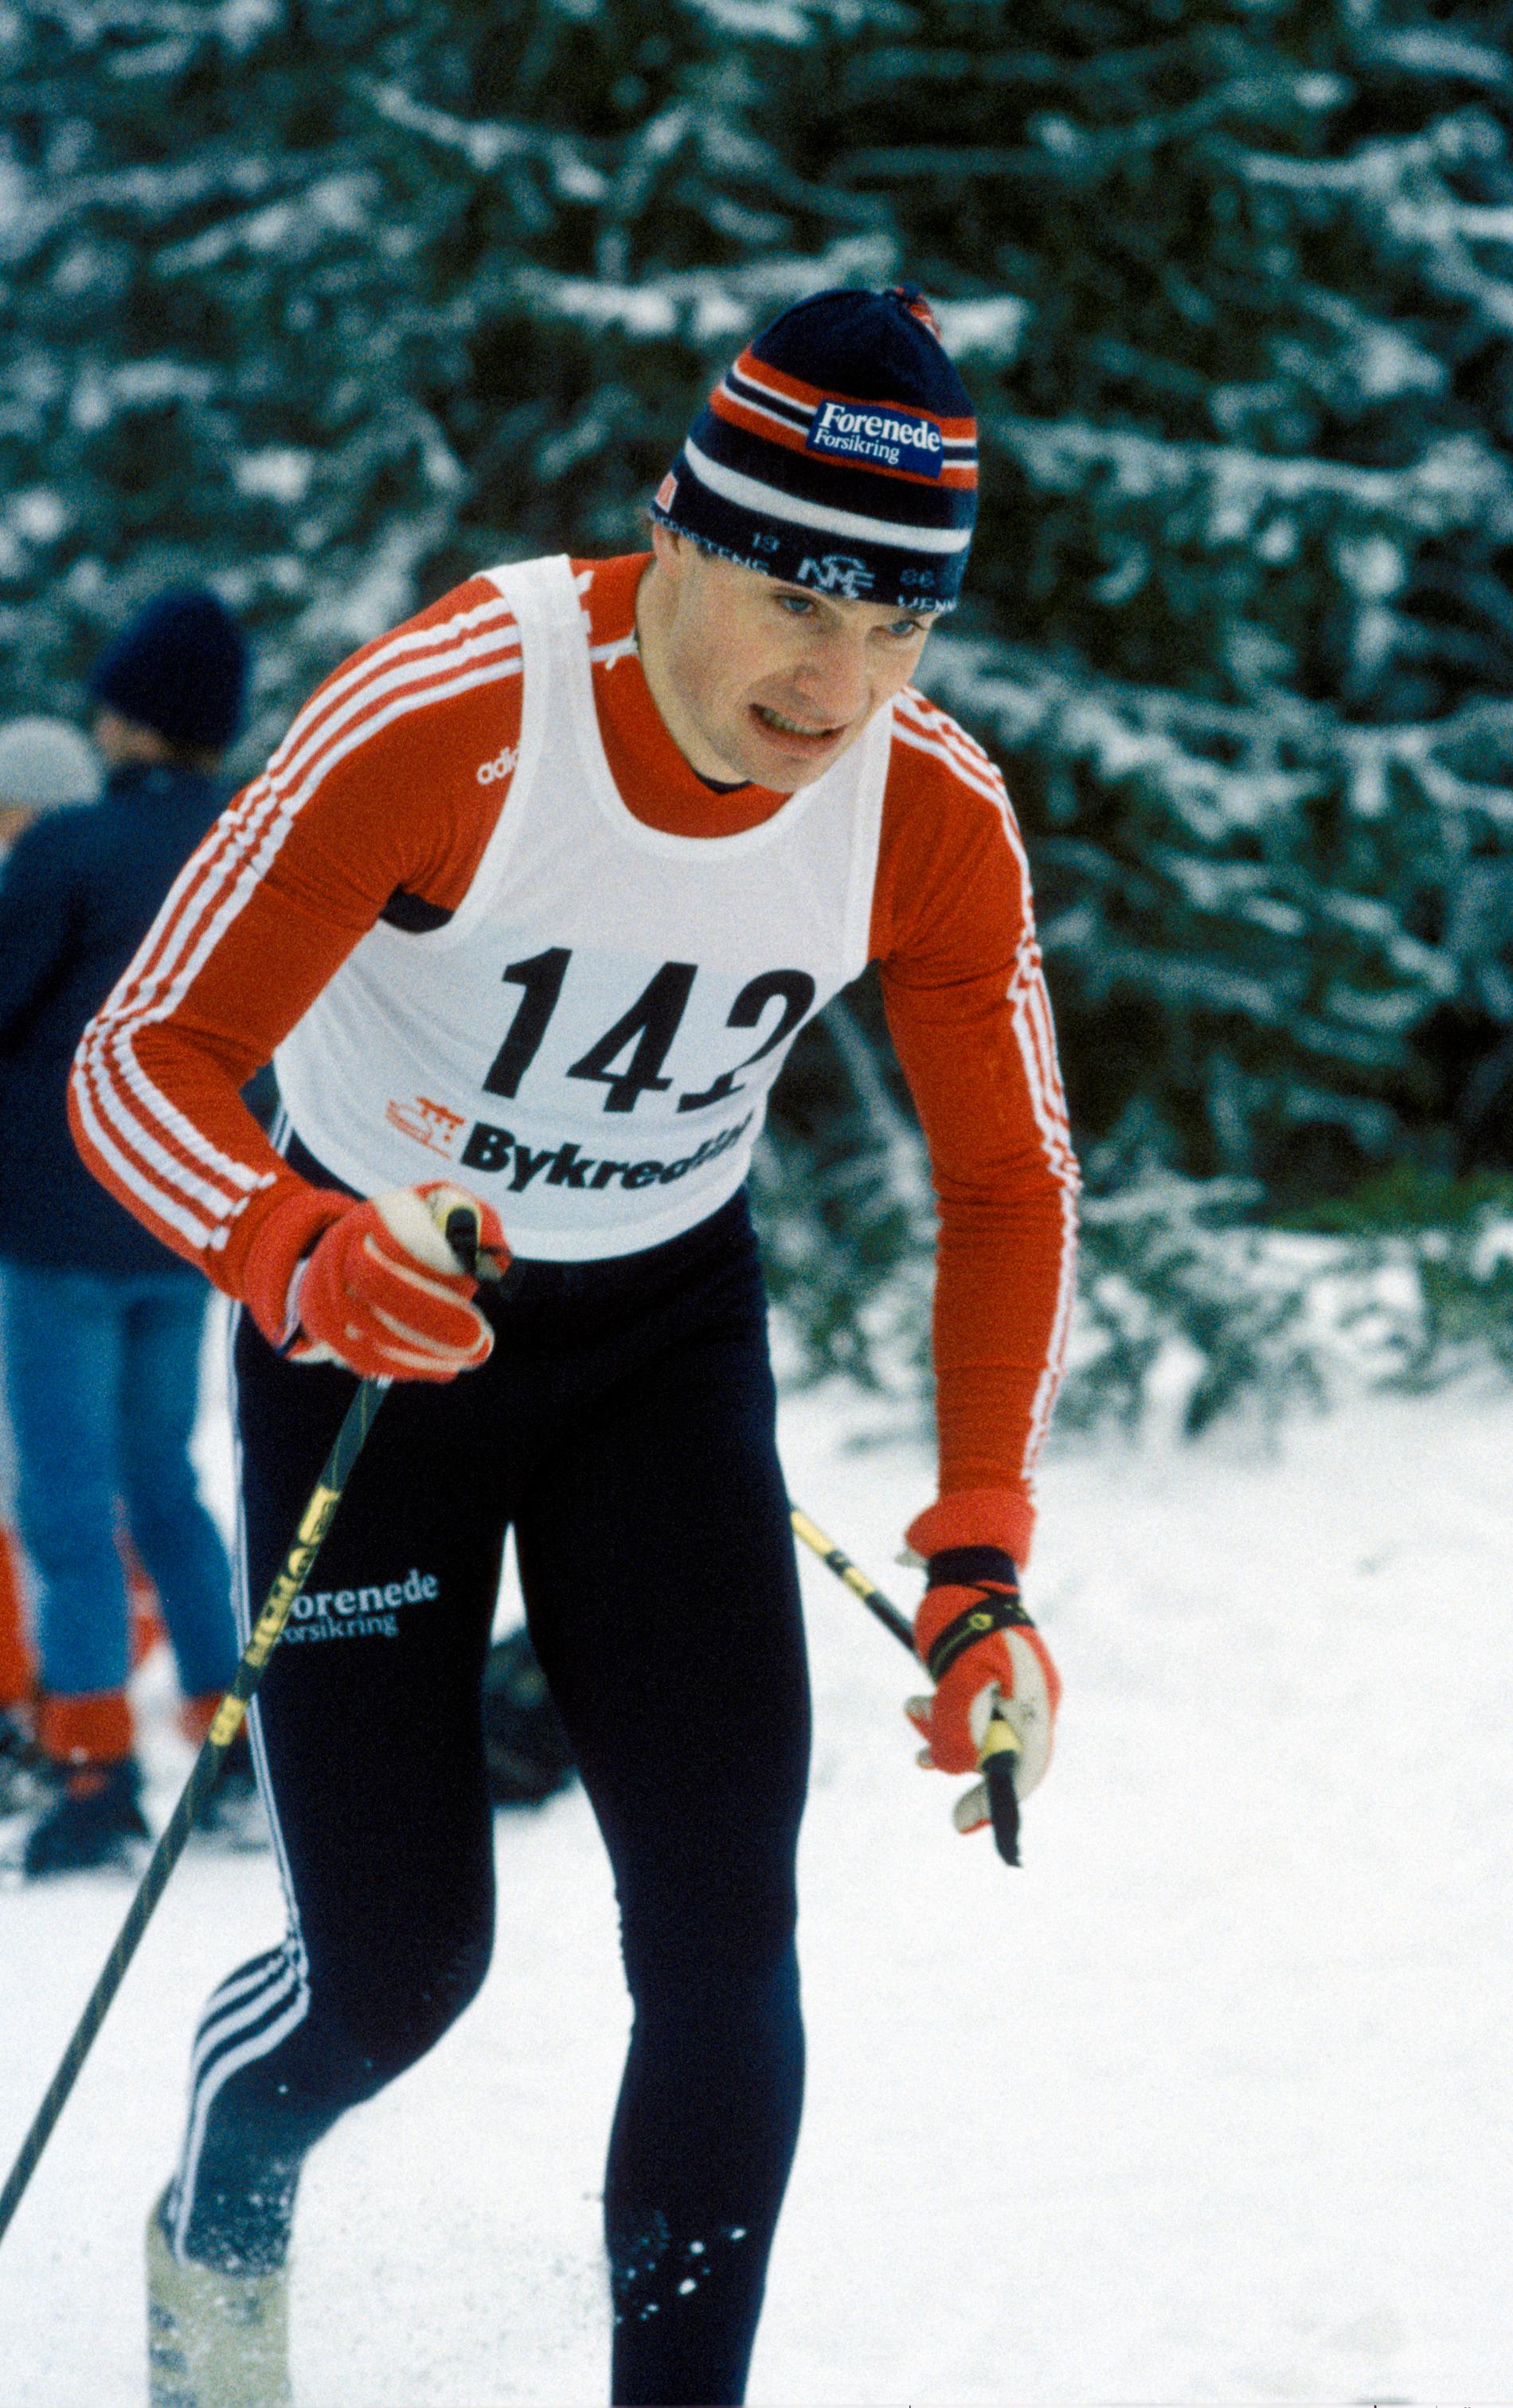 Martin Hole i aksjon på 15-kilometeren i NM på ski i Vang i 1986.